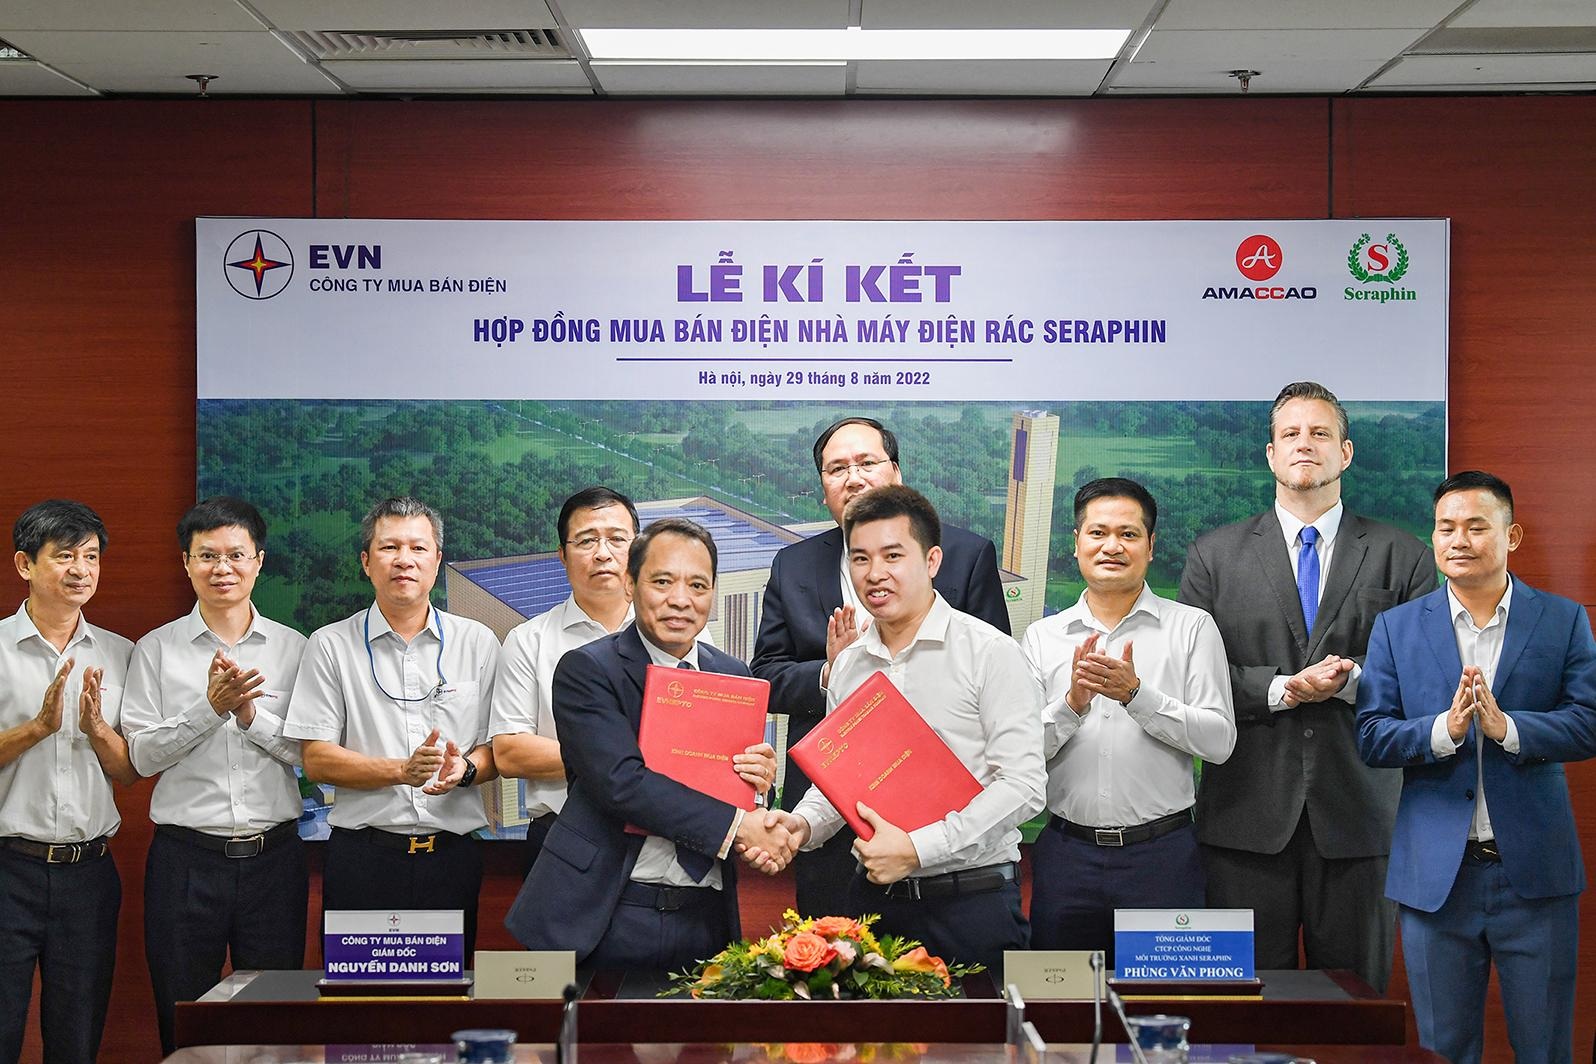 Nhà máy điện rác Seraphin ký hợp đồng mua bán điện với EVN - 5